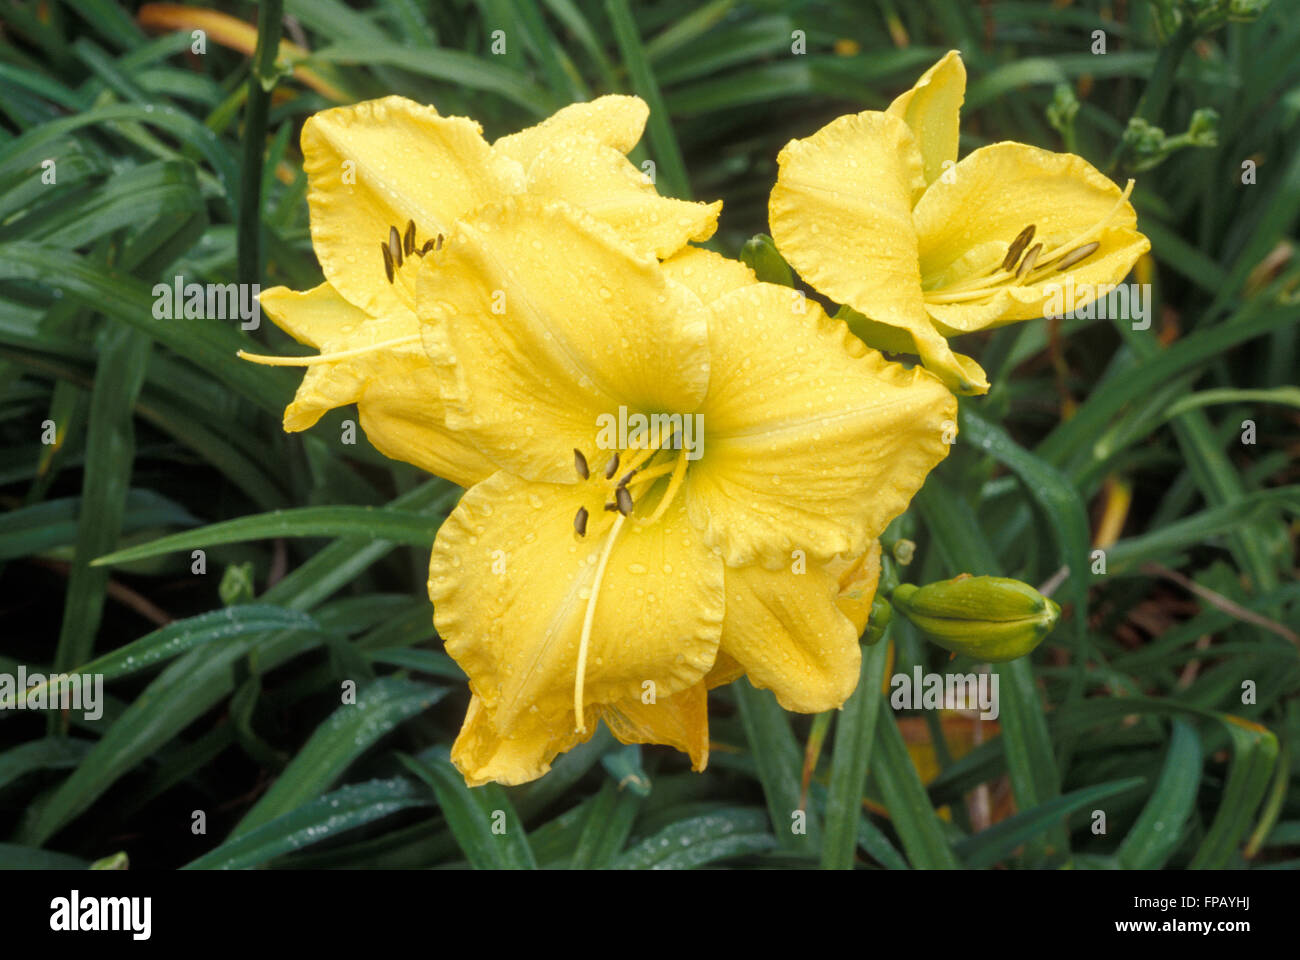 Yellow Day lilies (Hemerocallis) Stock Photo